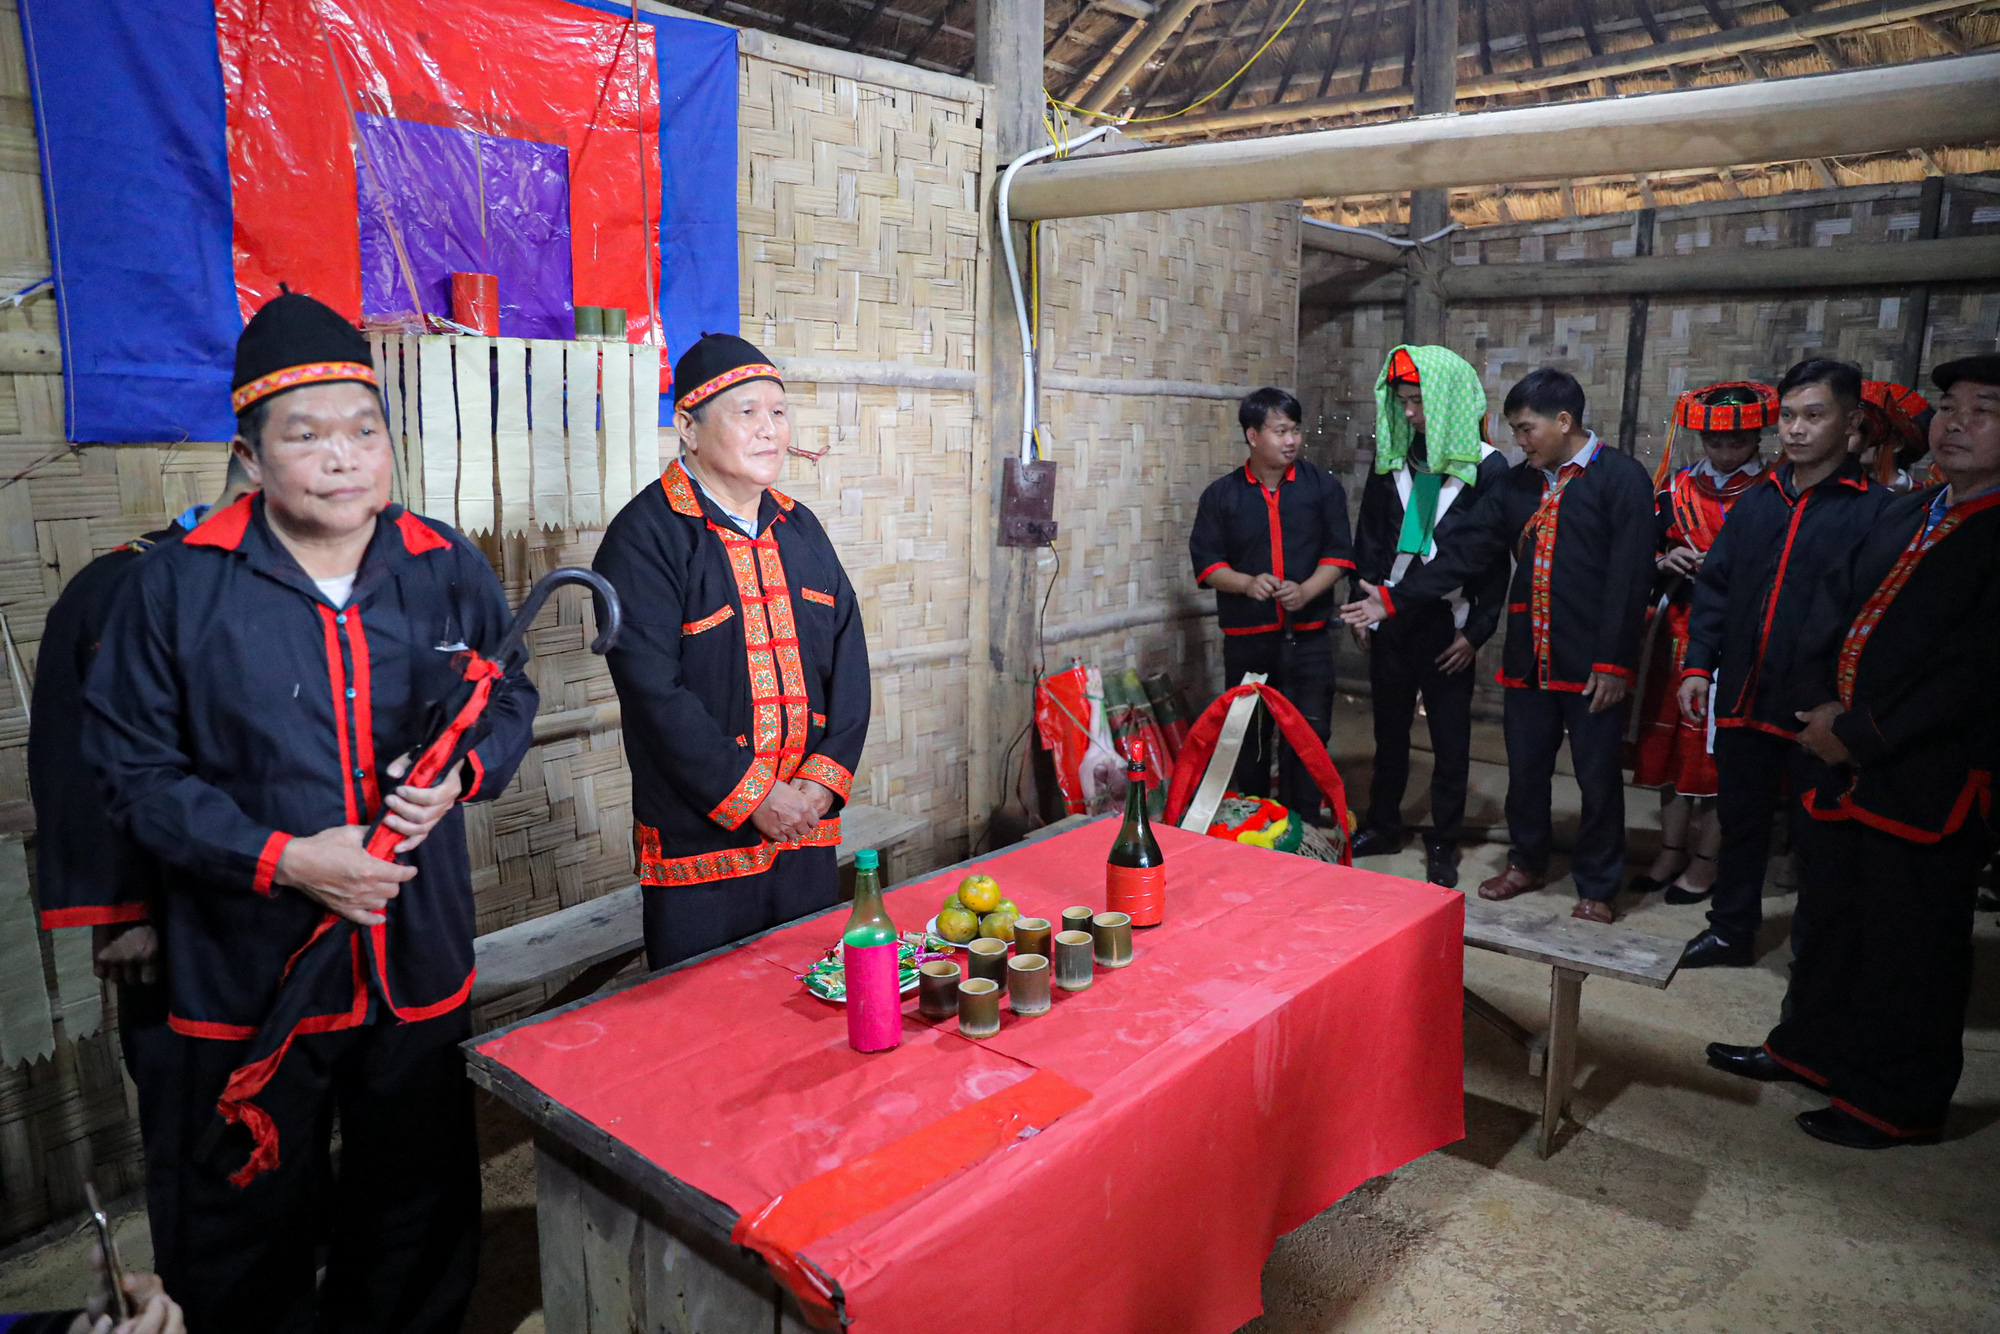 Tái hiện lễ cưới của Dân tộc Pà Thẻn (Hà Giang) và nghi lễ Mừng lúa mới của dân tộc Bahnar (Gia Lai)  tại Hà Nội - Ảnh 2.